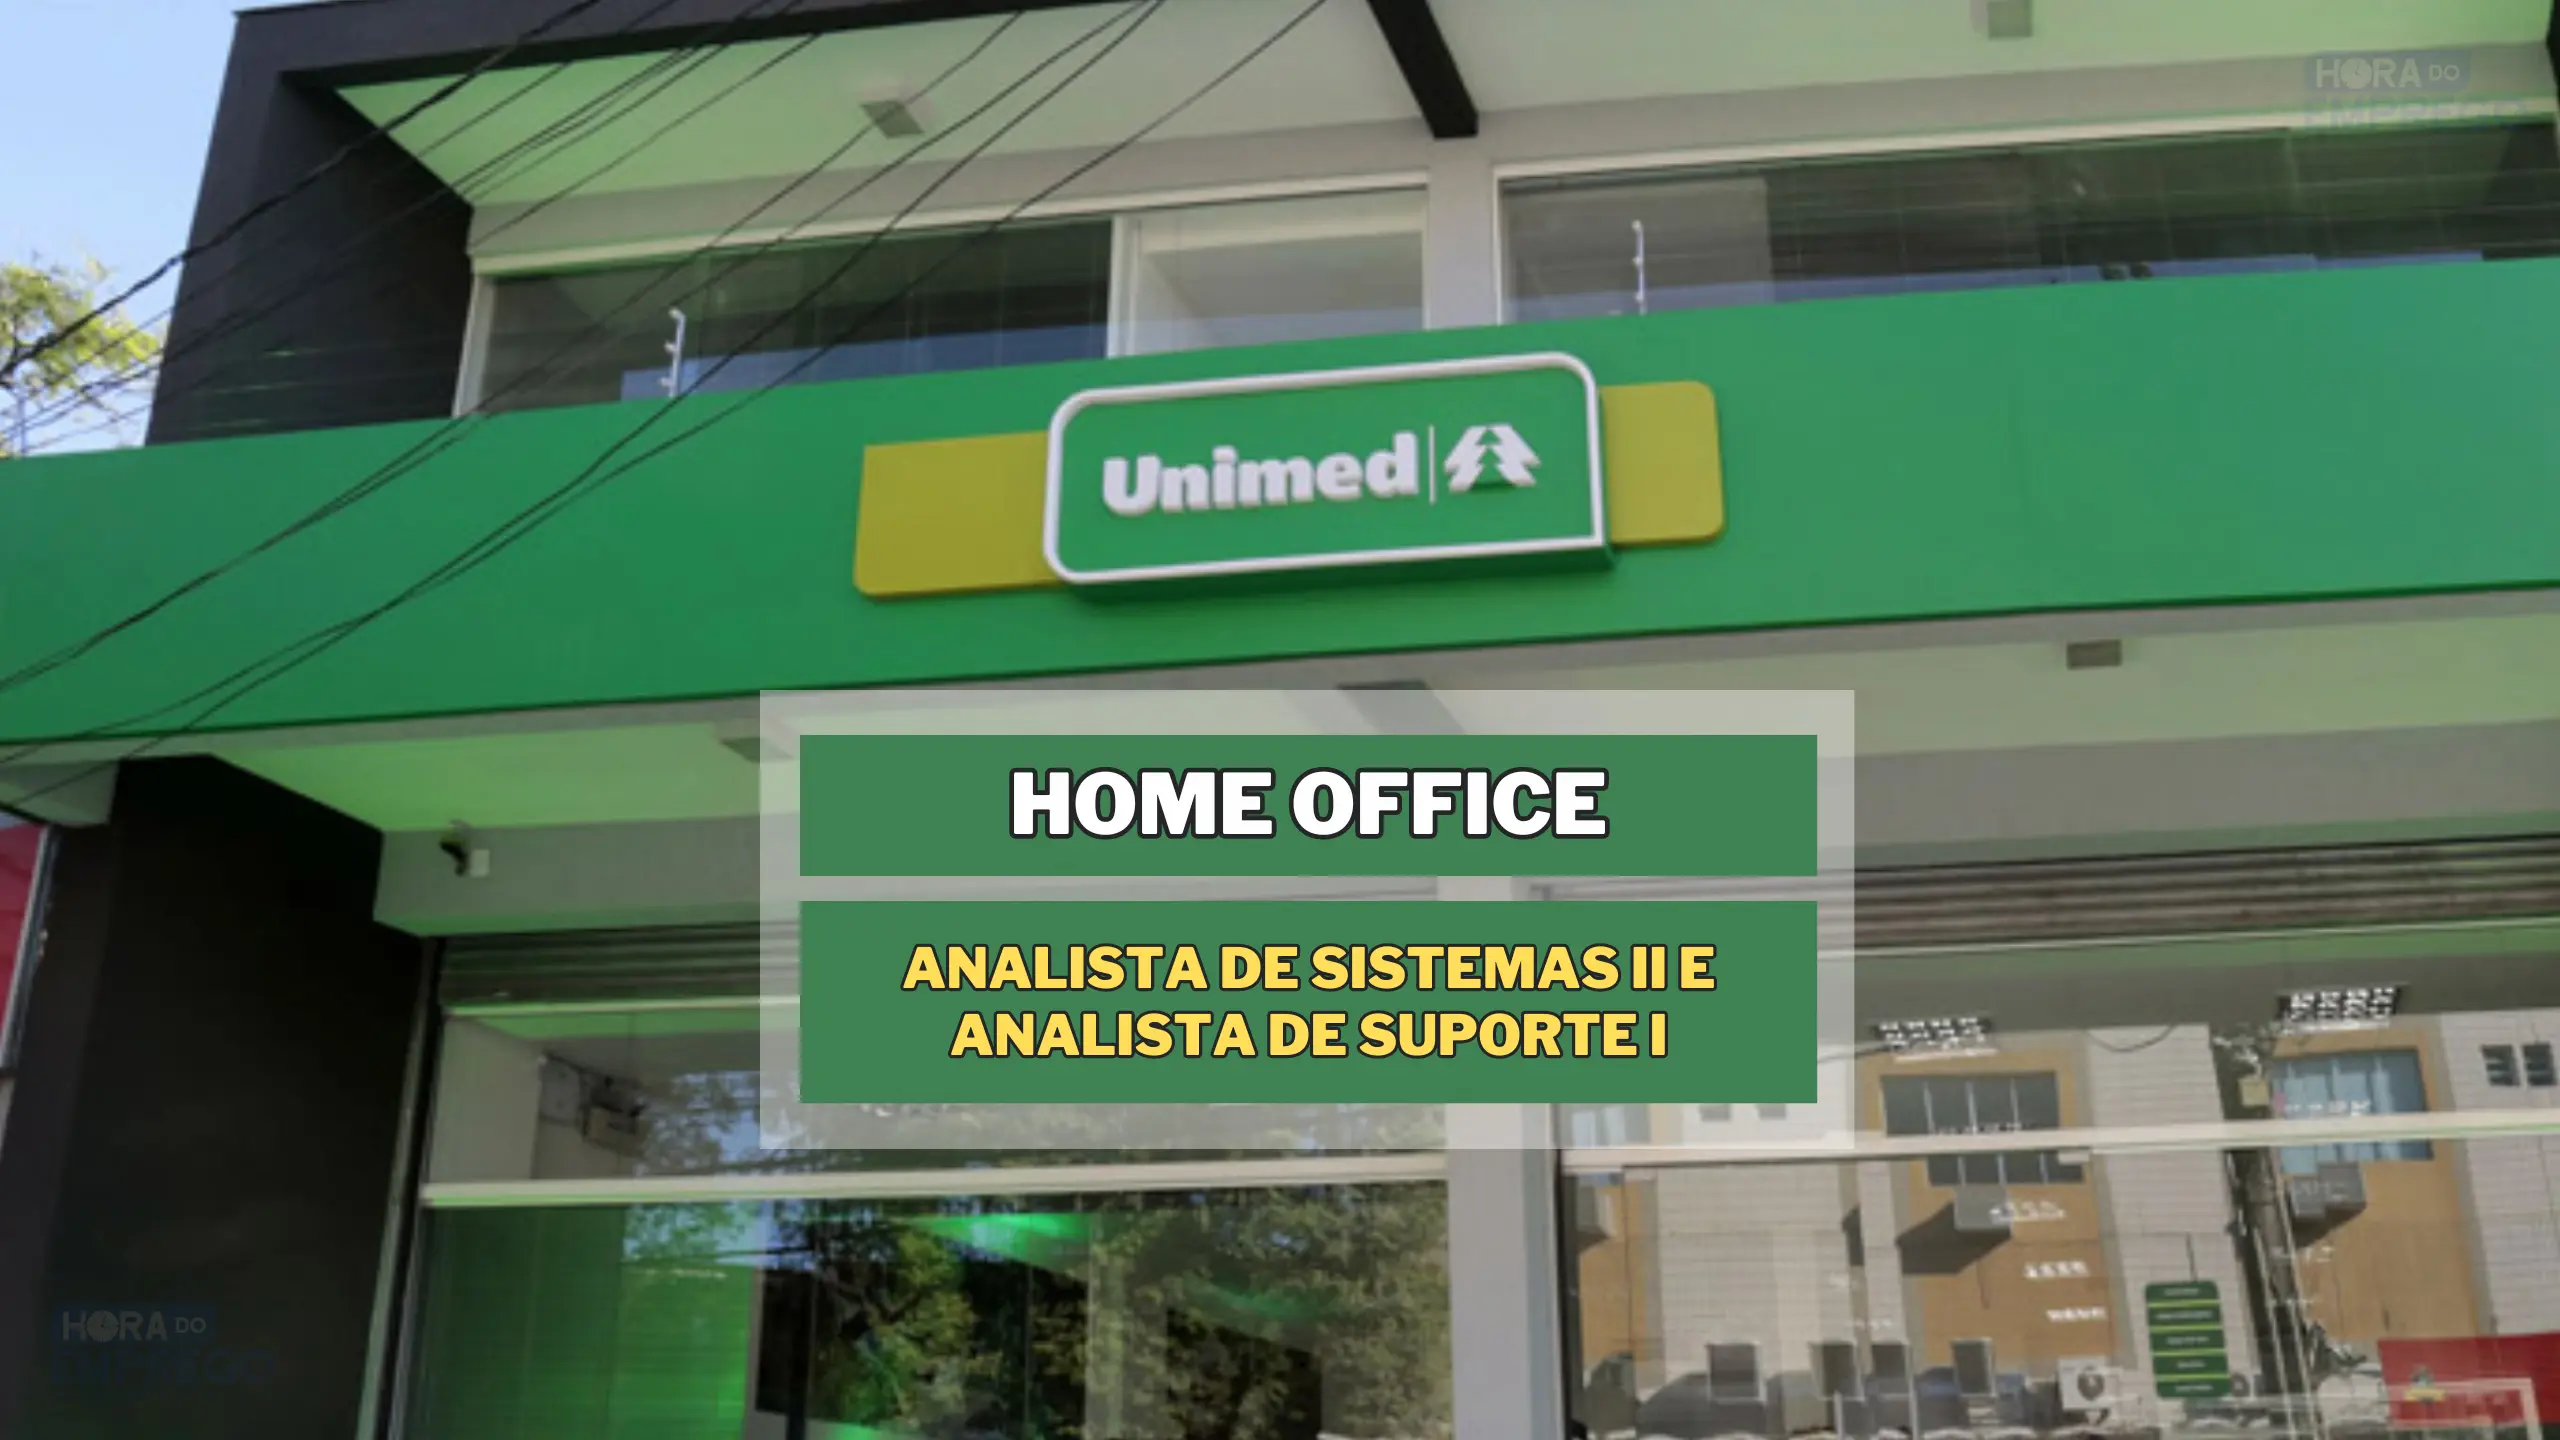 Trabalhe de Casa na Unimed POA: Vagas HOME OFFICE para Analista de Sistemas II e Analista de Suporte I